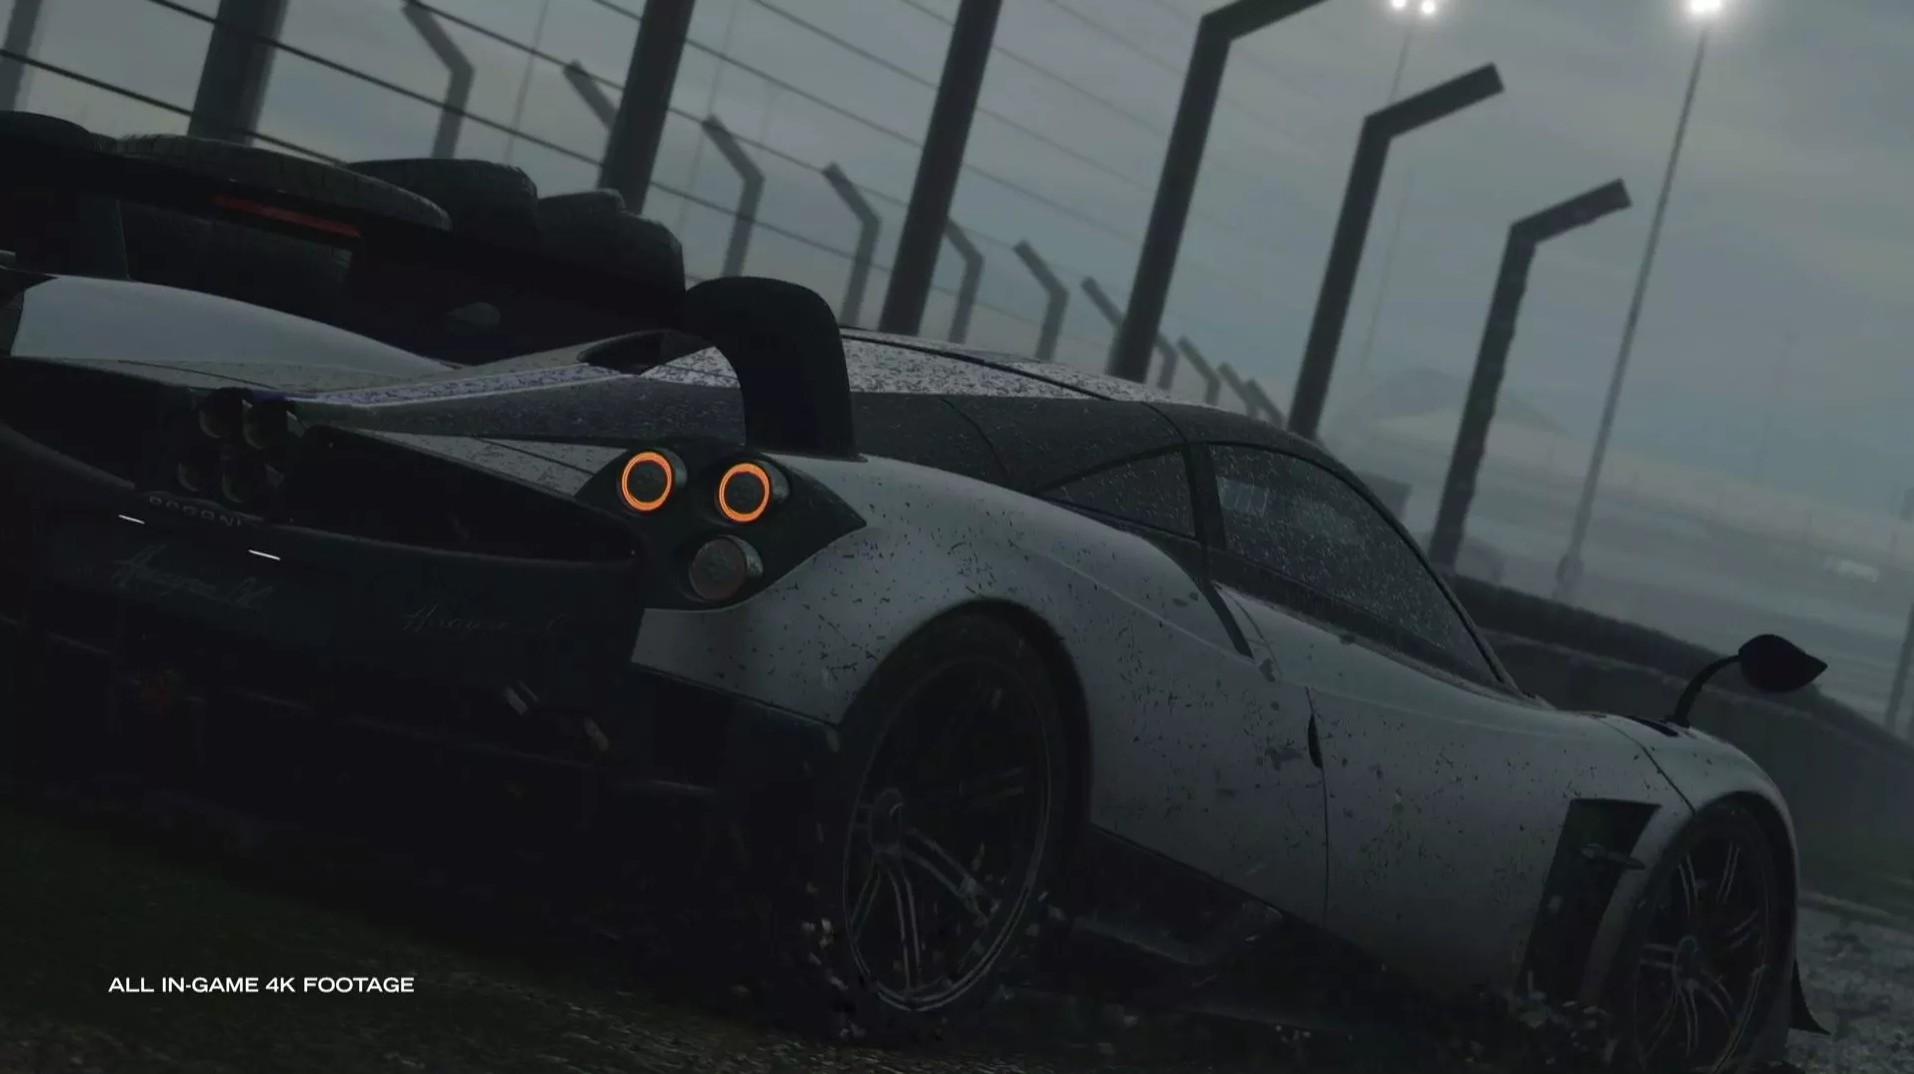 Microsoft reforça que Forza Motorsport (PC/XSX) e vários outros